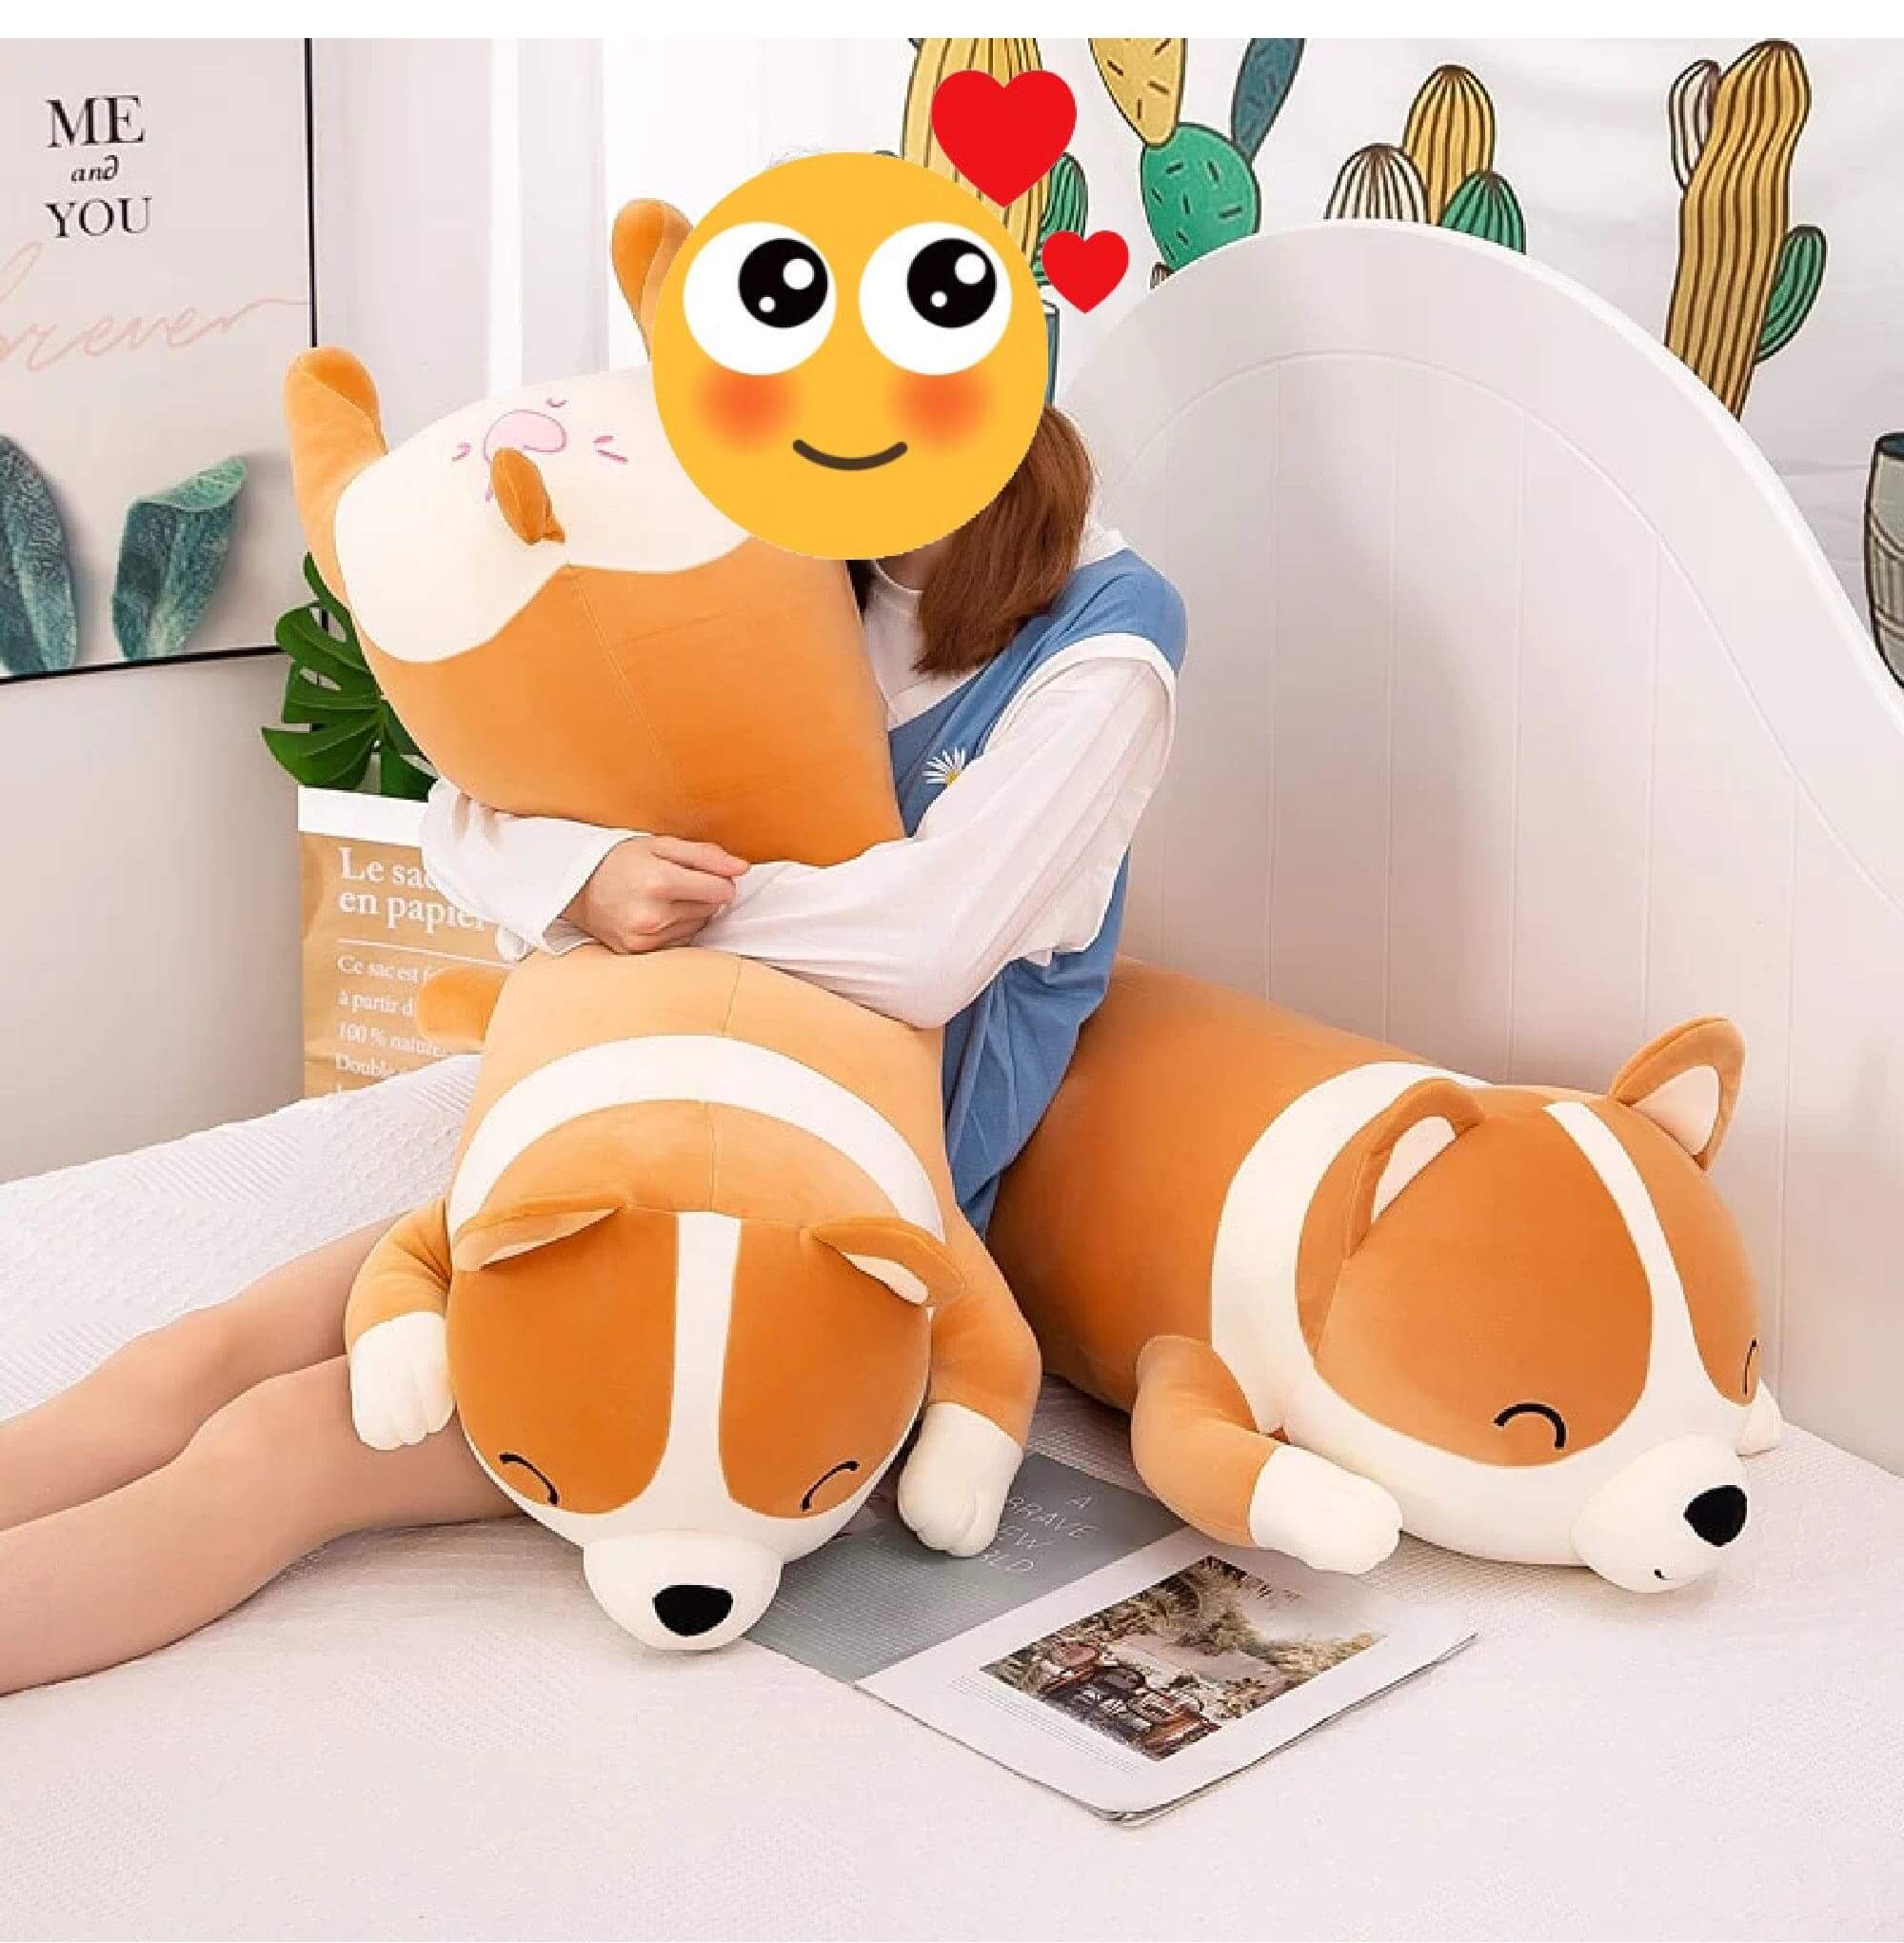 Hug Me Corgi Stuffed Animal Huggable Plush Pillows